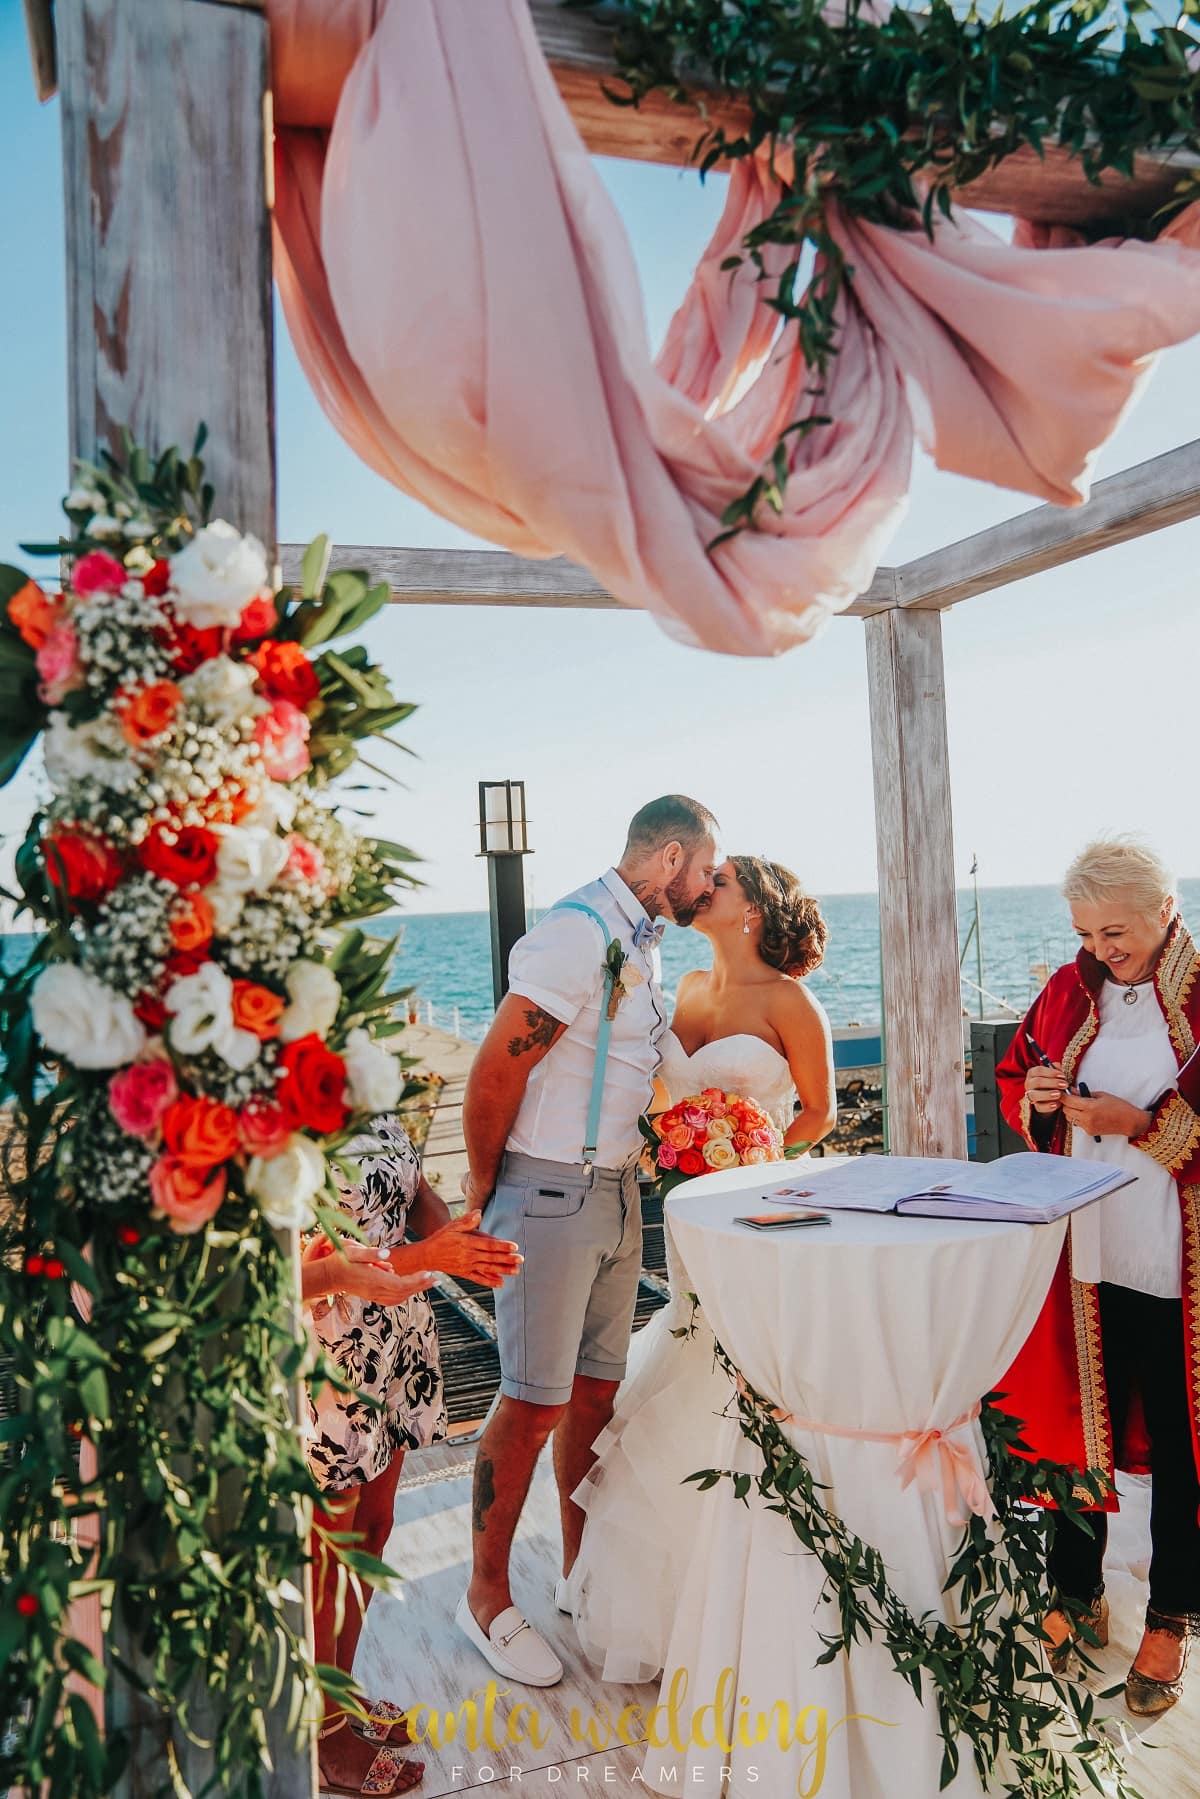 British Wedding in Antalya | Anta Organisation Wedding Planner Turkey